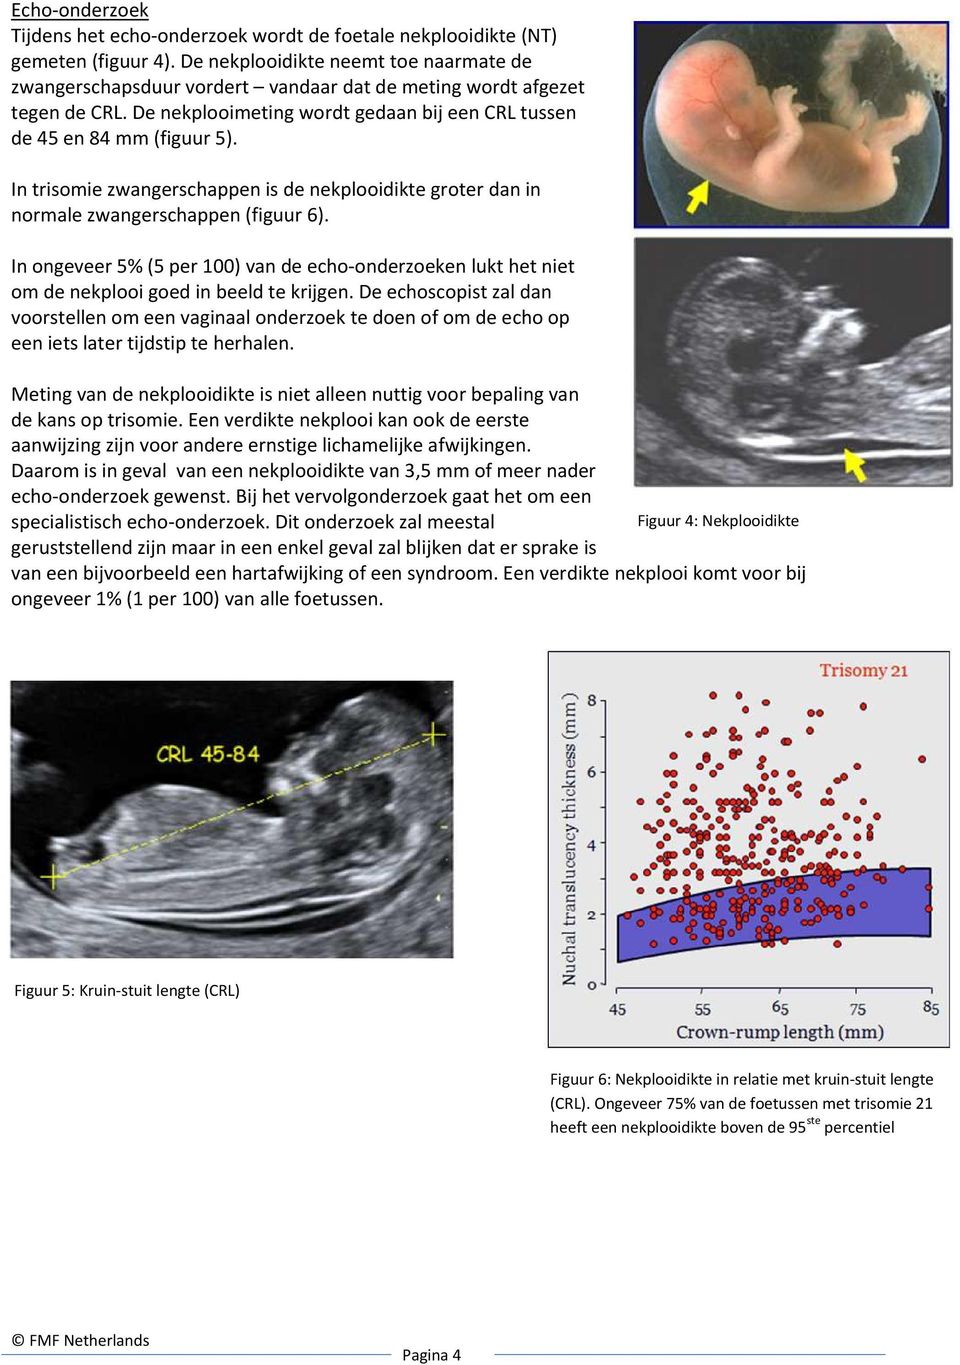 In trisomie zwangerschappen is de nekplooidikte groter dan in normale zwangerschappen (figuur 6).